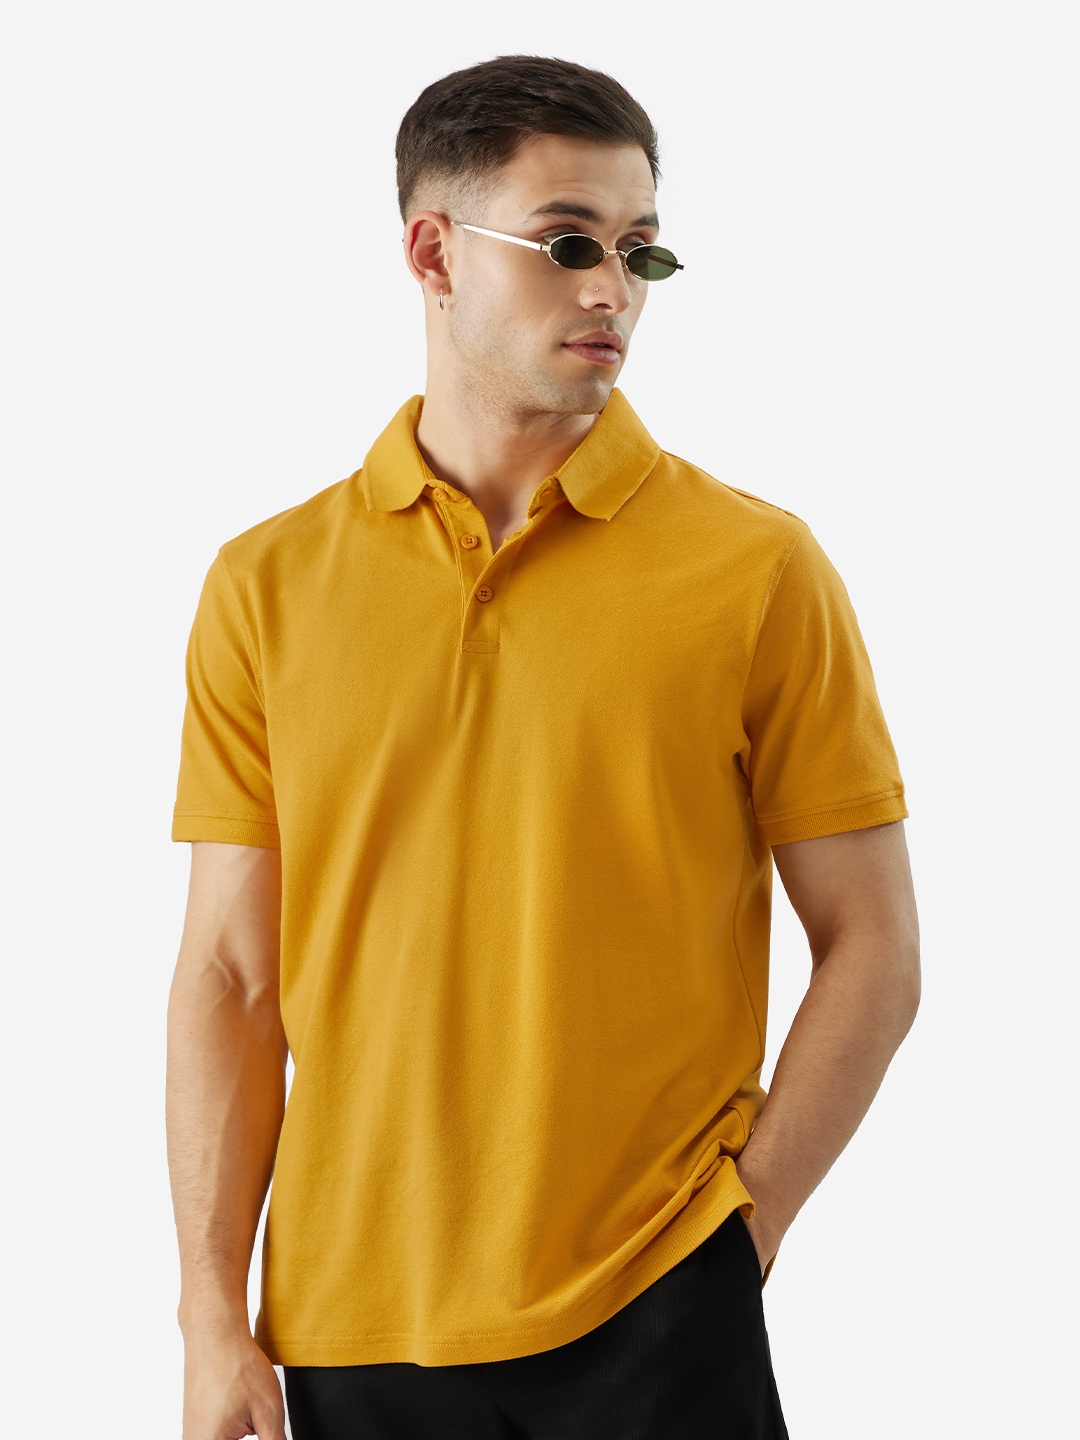 Men's Solids: Ochre Polo T-Shirt